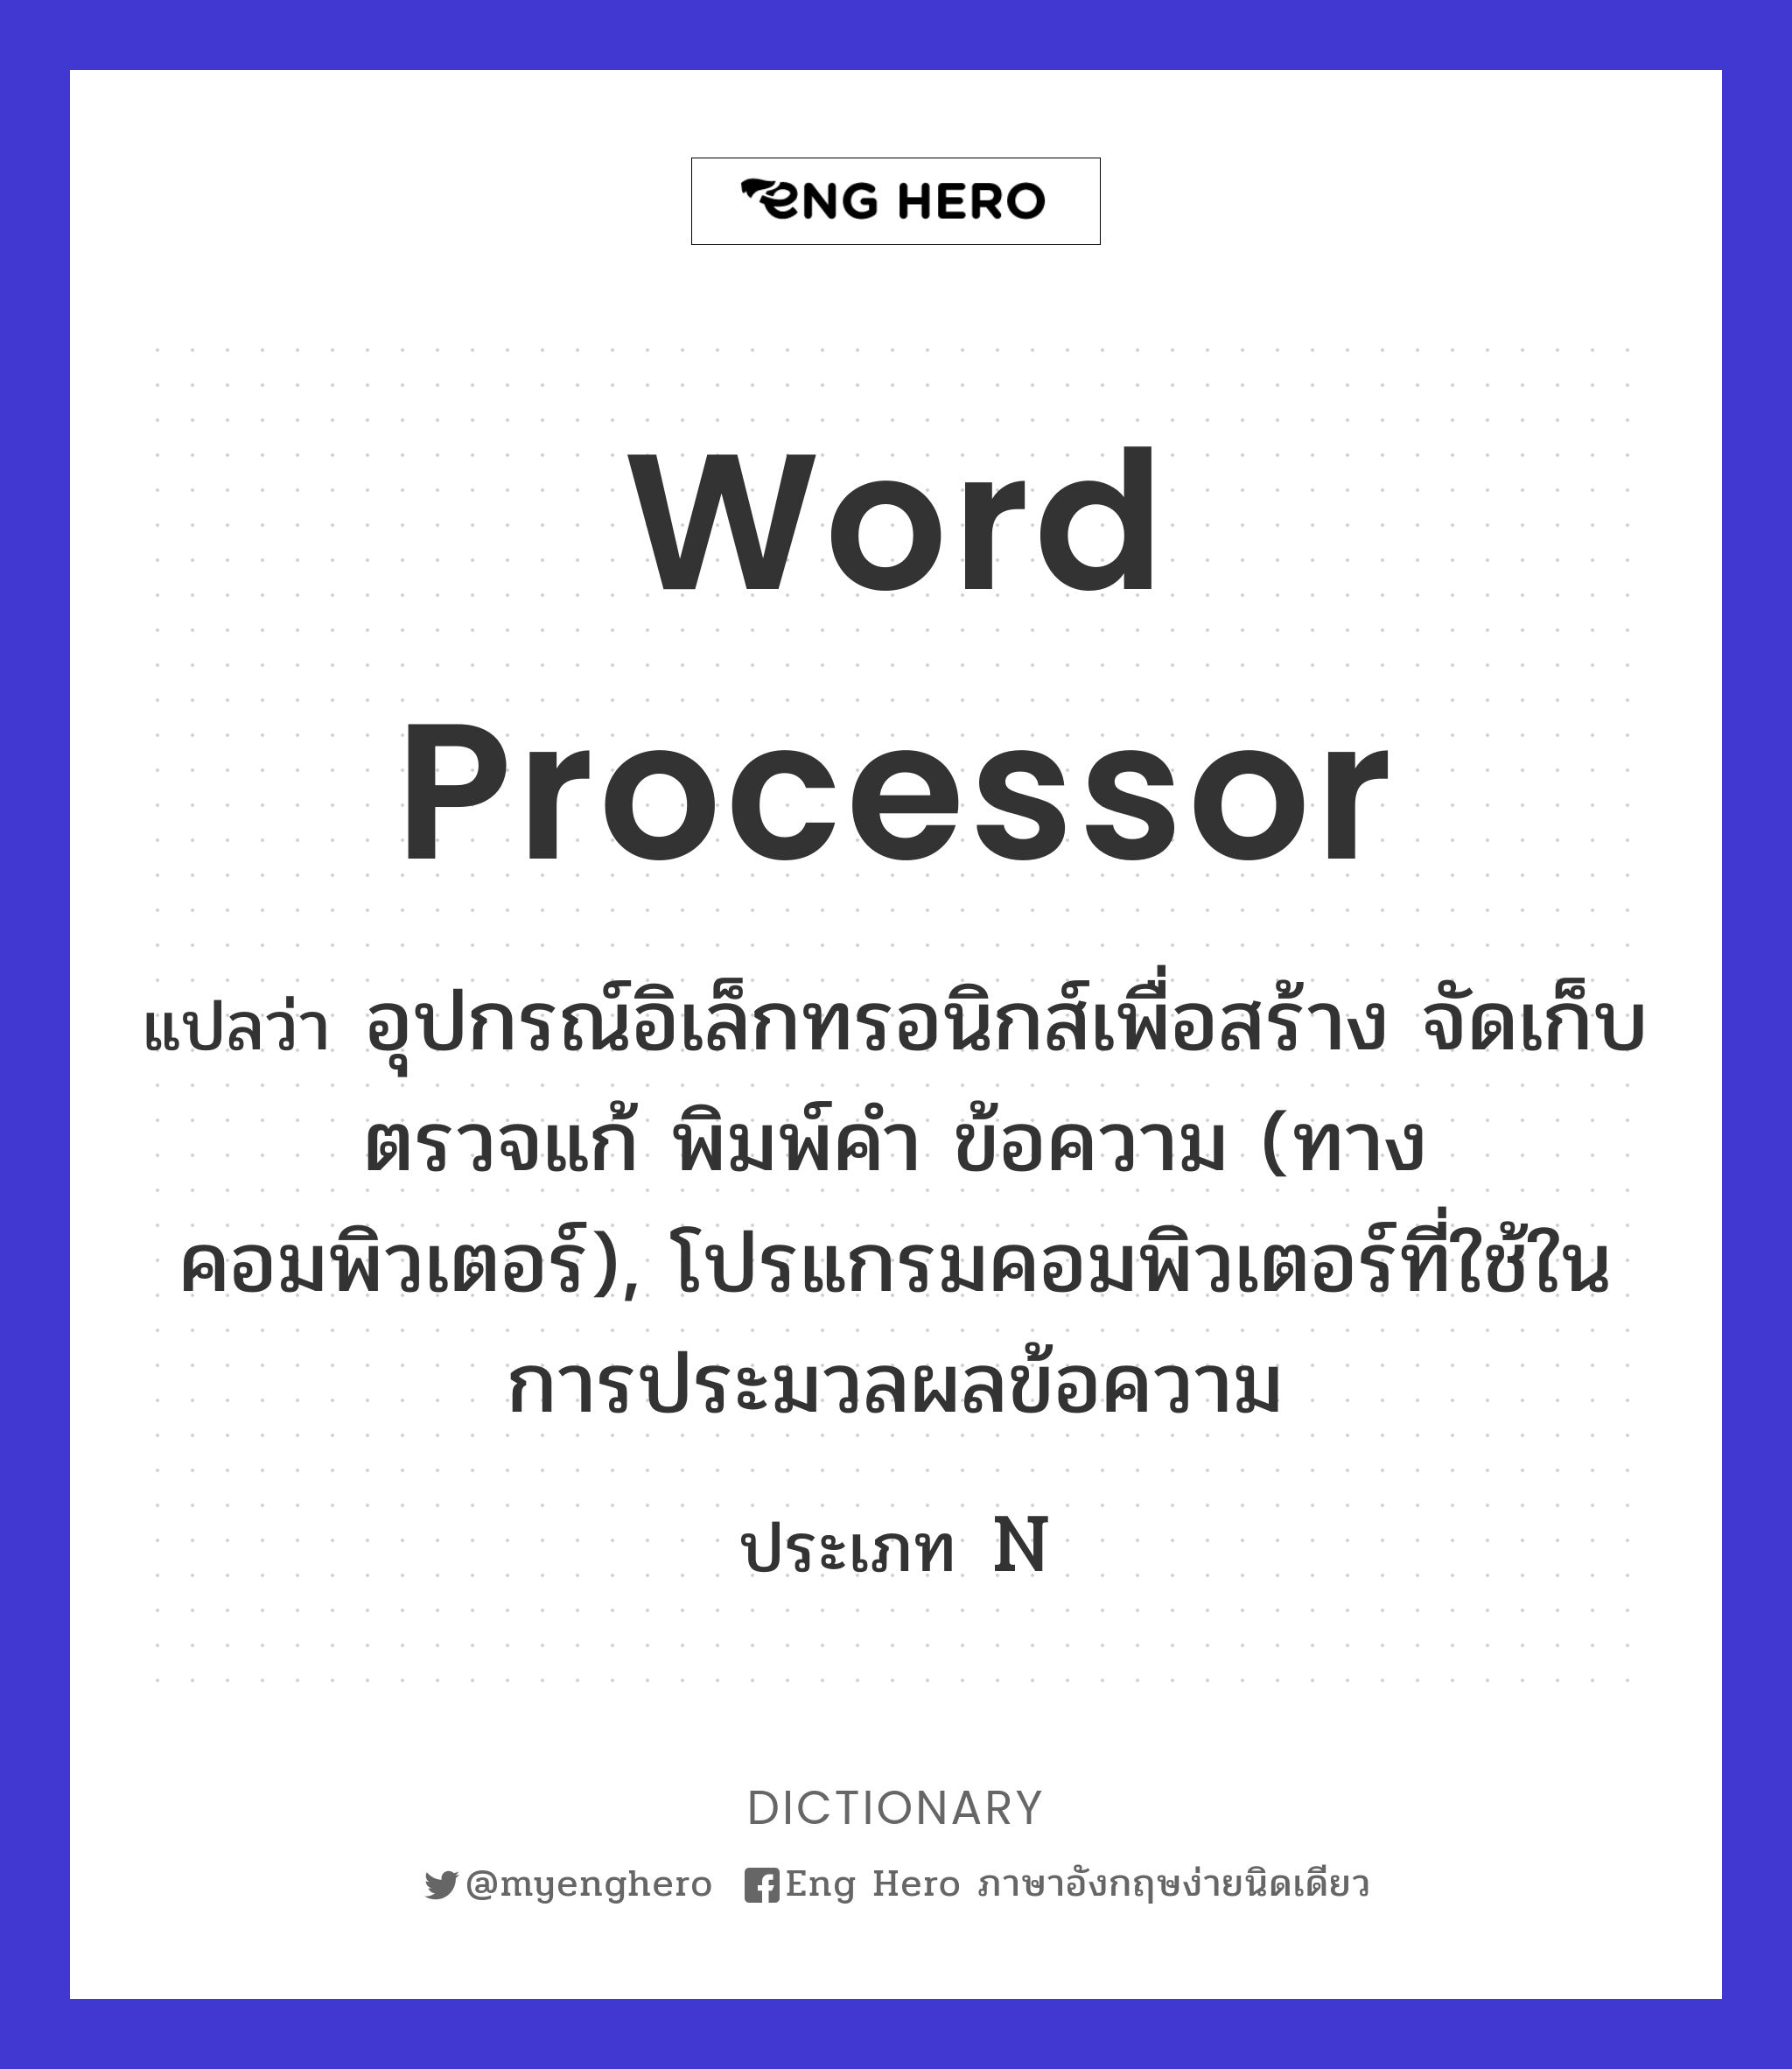 Word Processor แปลว่า อุปกรณ์อิเล็กทรอนิกส์เพื่อสร้าง จัดเก็บ ตรวจแก้  พิมพ์คำ ข้อความ (ทางคอมพิวเตอร์), โปรแกรมคอมพิวเตอร์ที่ใช้ในการประมวลผลข้อความ  | Eng Hero เรียนภาษาอังกฤษ ออนไลน์ ฟรี